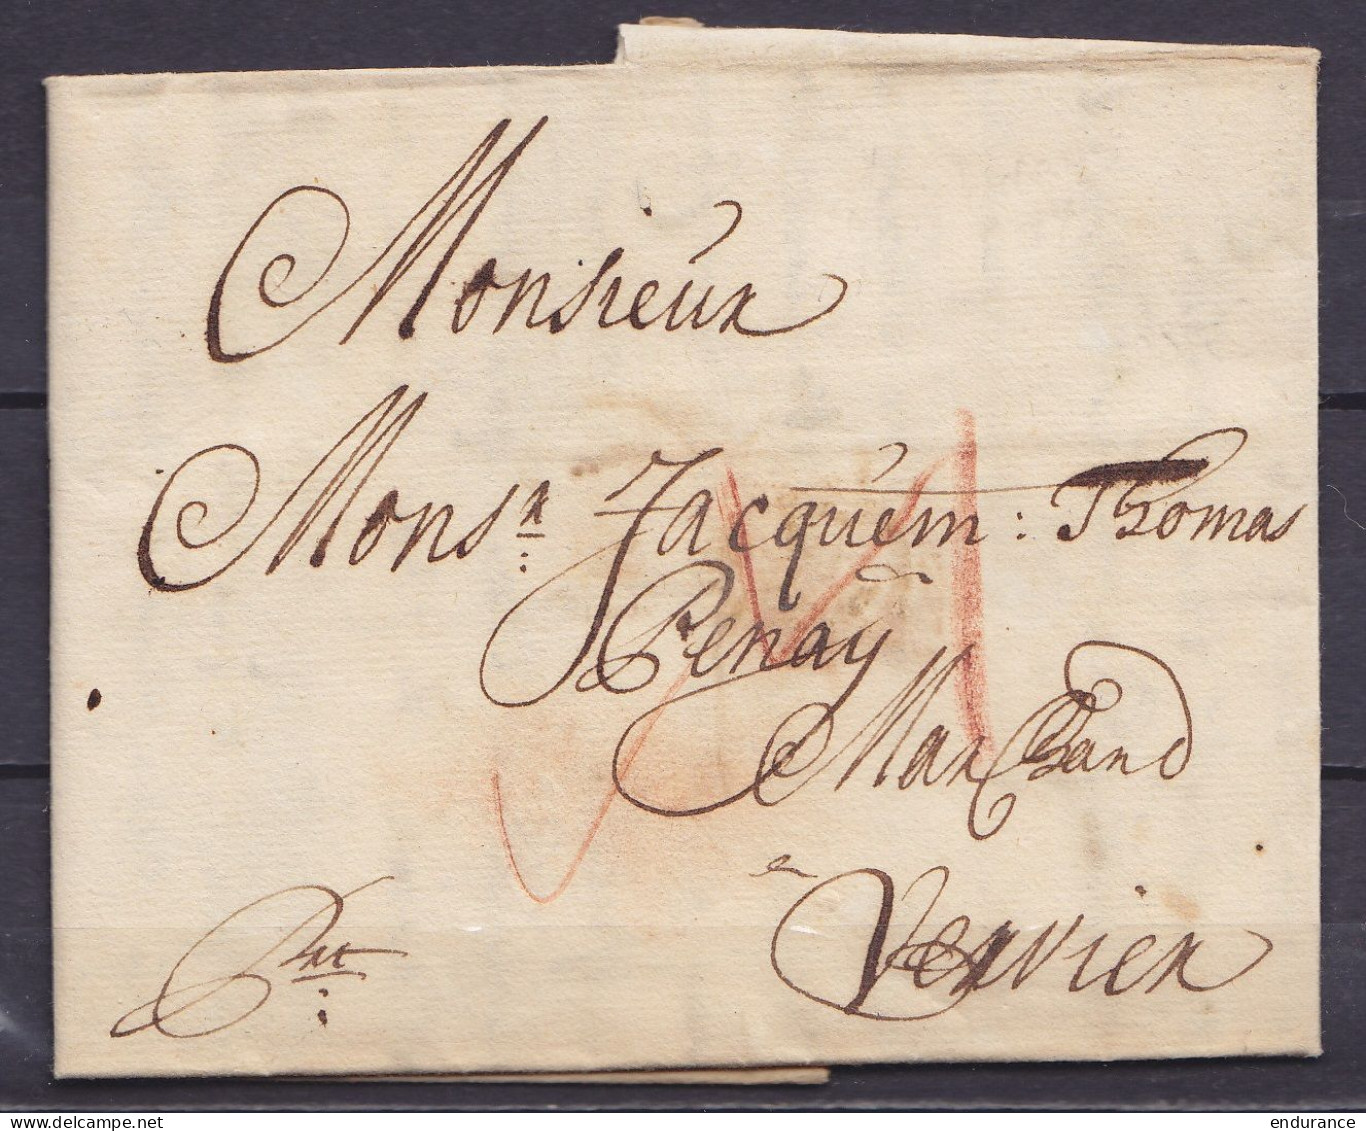 L. Datée 25 Septembre 1714 De AMSTERDAM Pour VERVIERS - Marques De 2-3 Messagers "VI" + "V" (ou "V" + "V" + "I") - 1714-1794 (Pays-Bas Autrichiens)